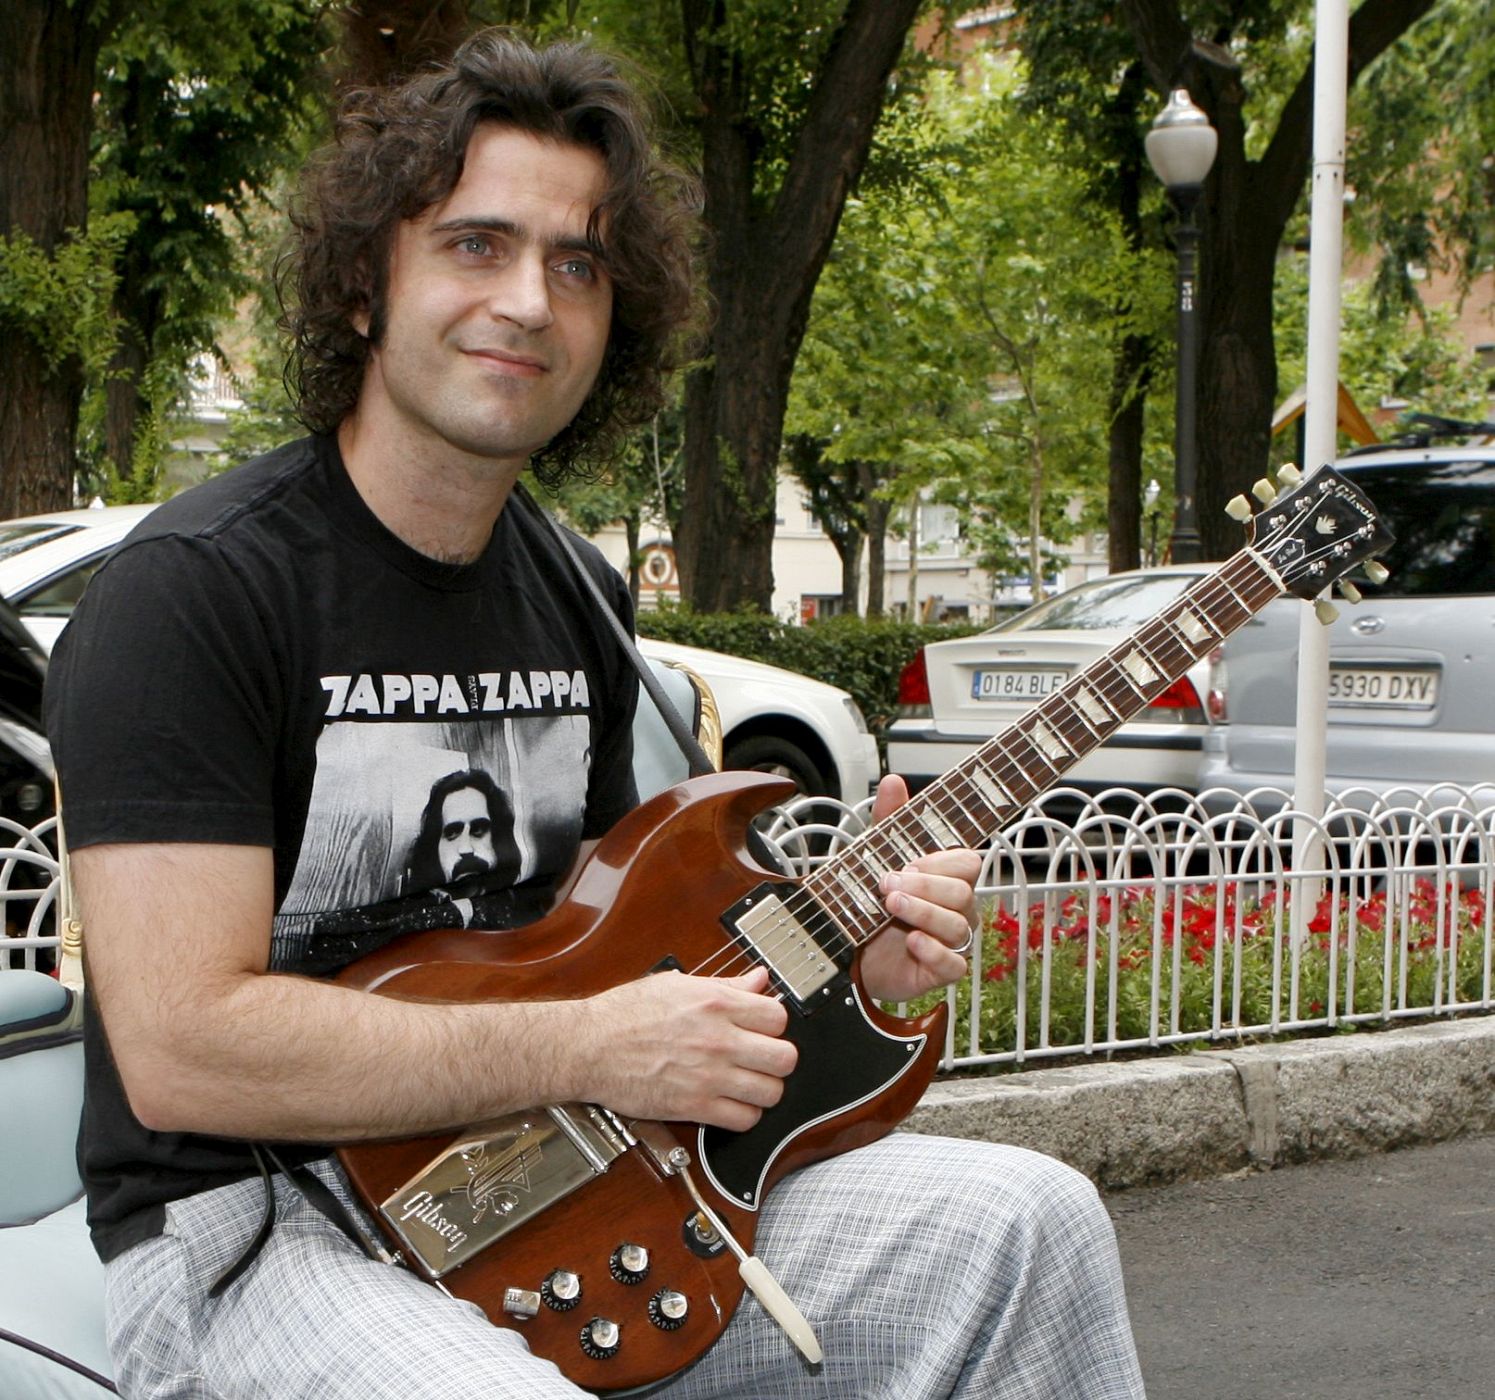 El hijo de Frank Zappa, Dweezil, trata de llevar a las nuevas generaciones la música de su padre.